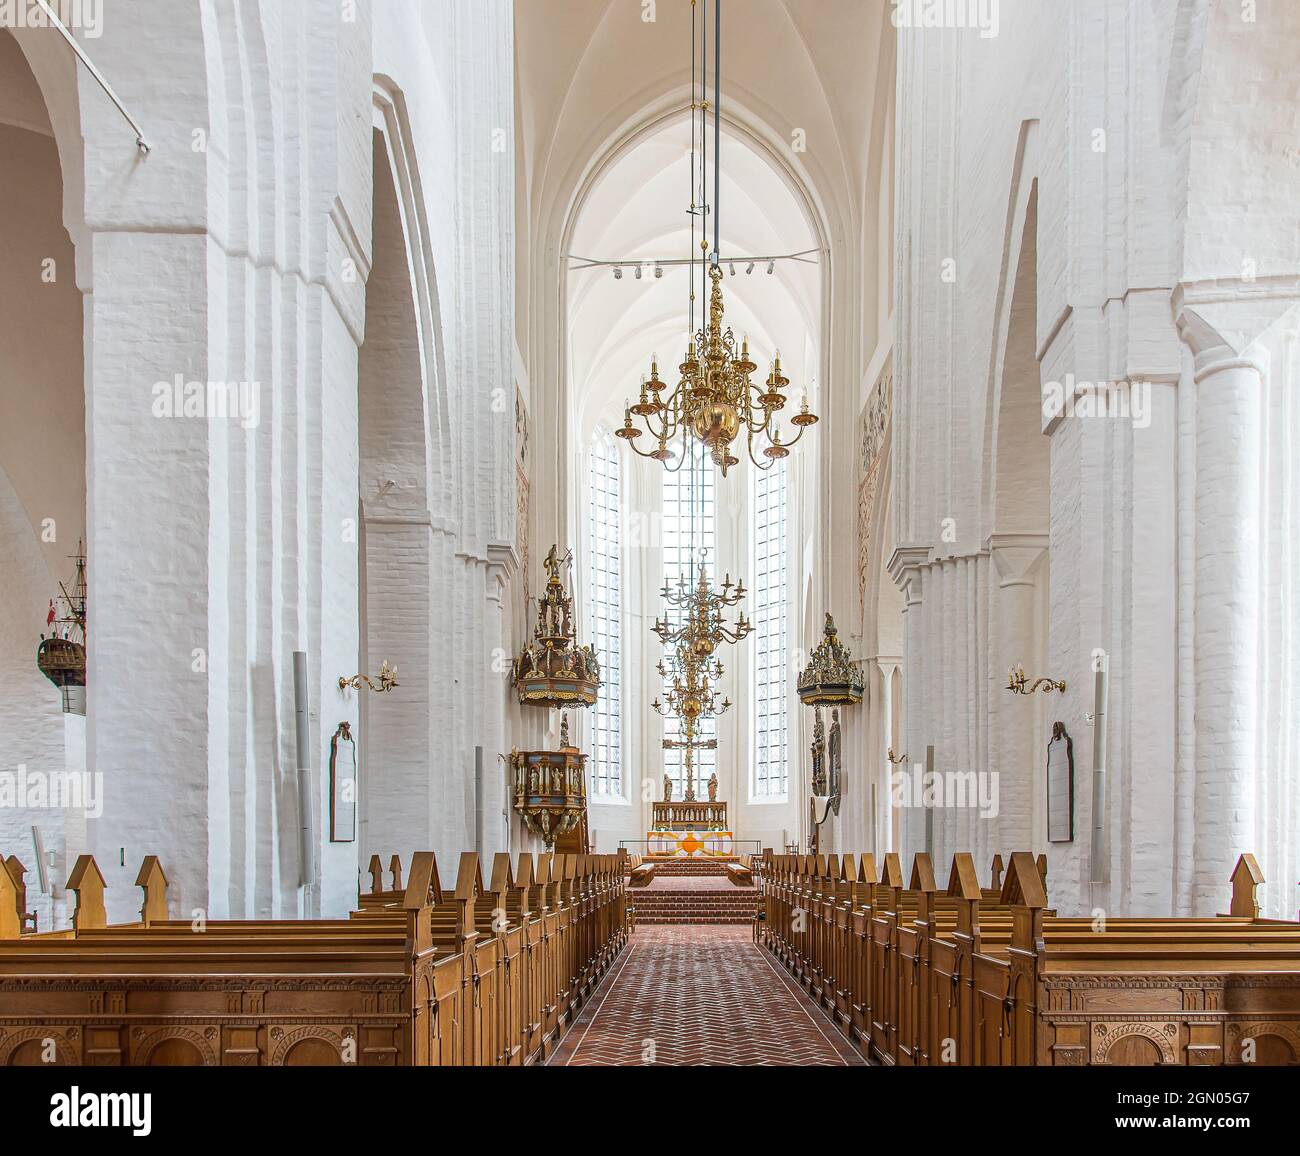 Das hohe und helle Kirchenschiff in der gotischen Kathedrale von Haderslev, Dänemark, 26. August 2021 Stockfoto